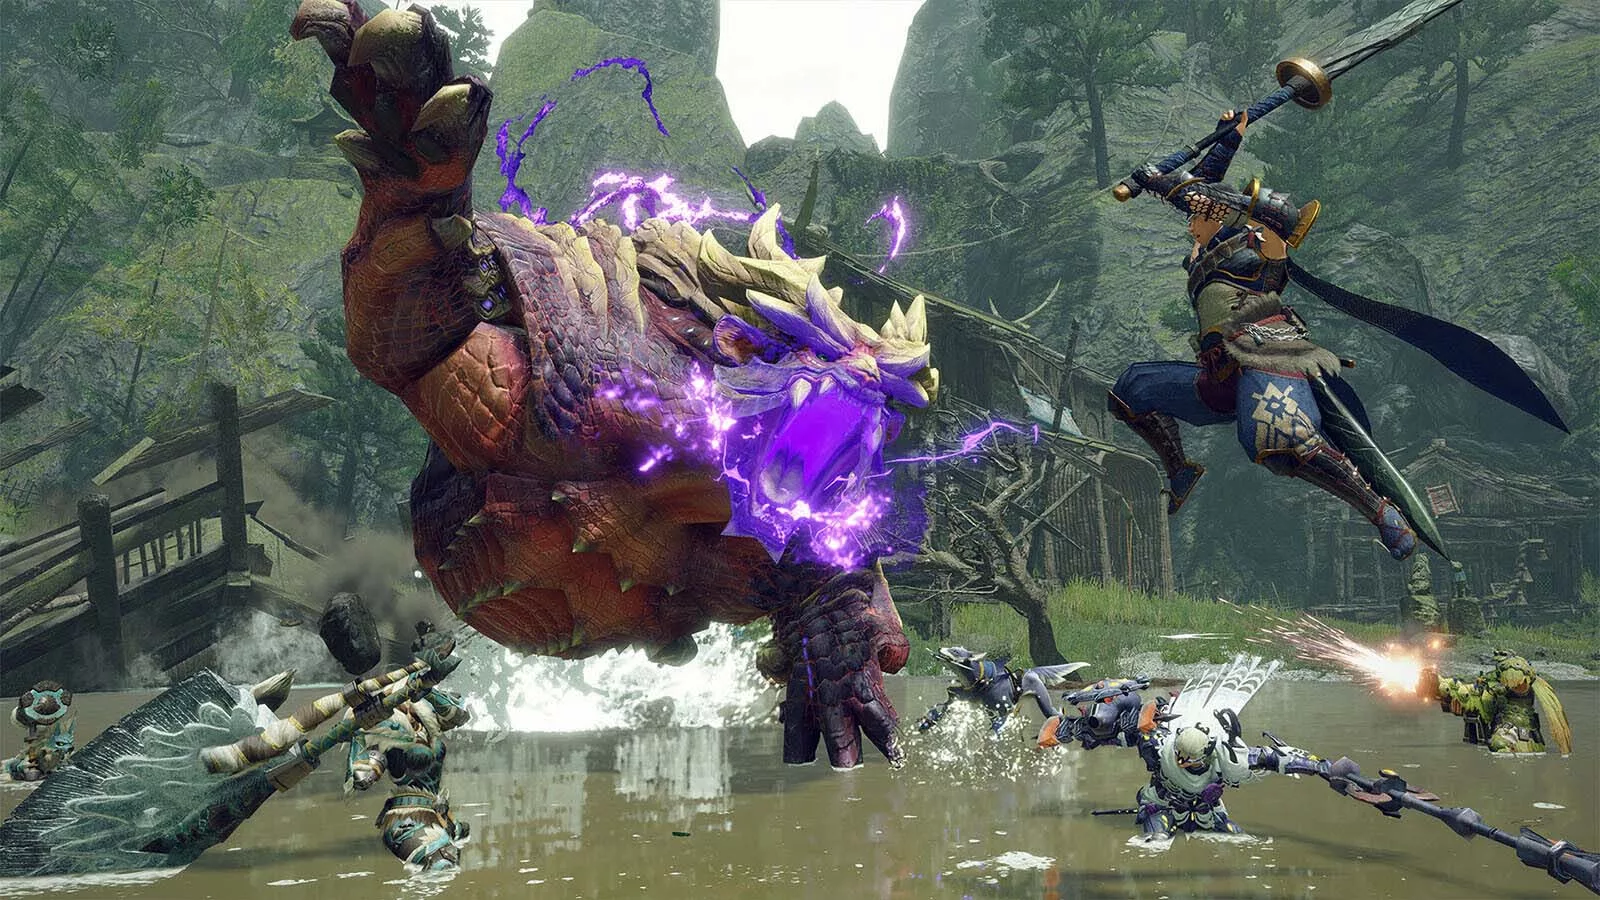 Скриншот из видеоигры, на котором два персонажа в броне сражаются с большим рогатым монстром